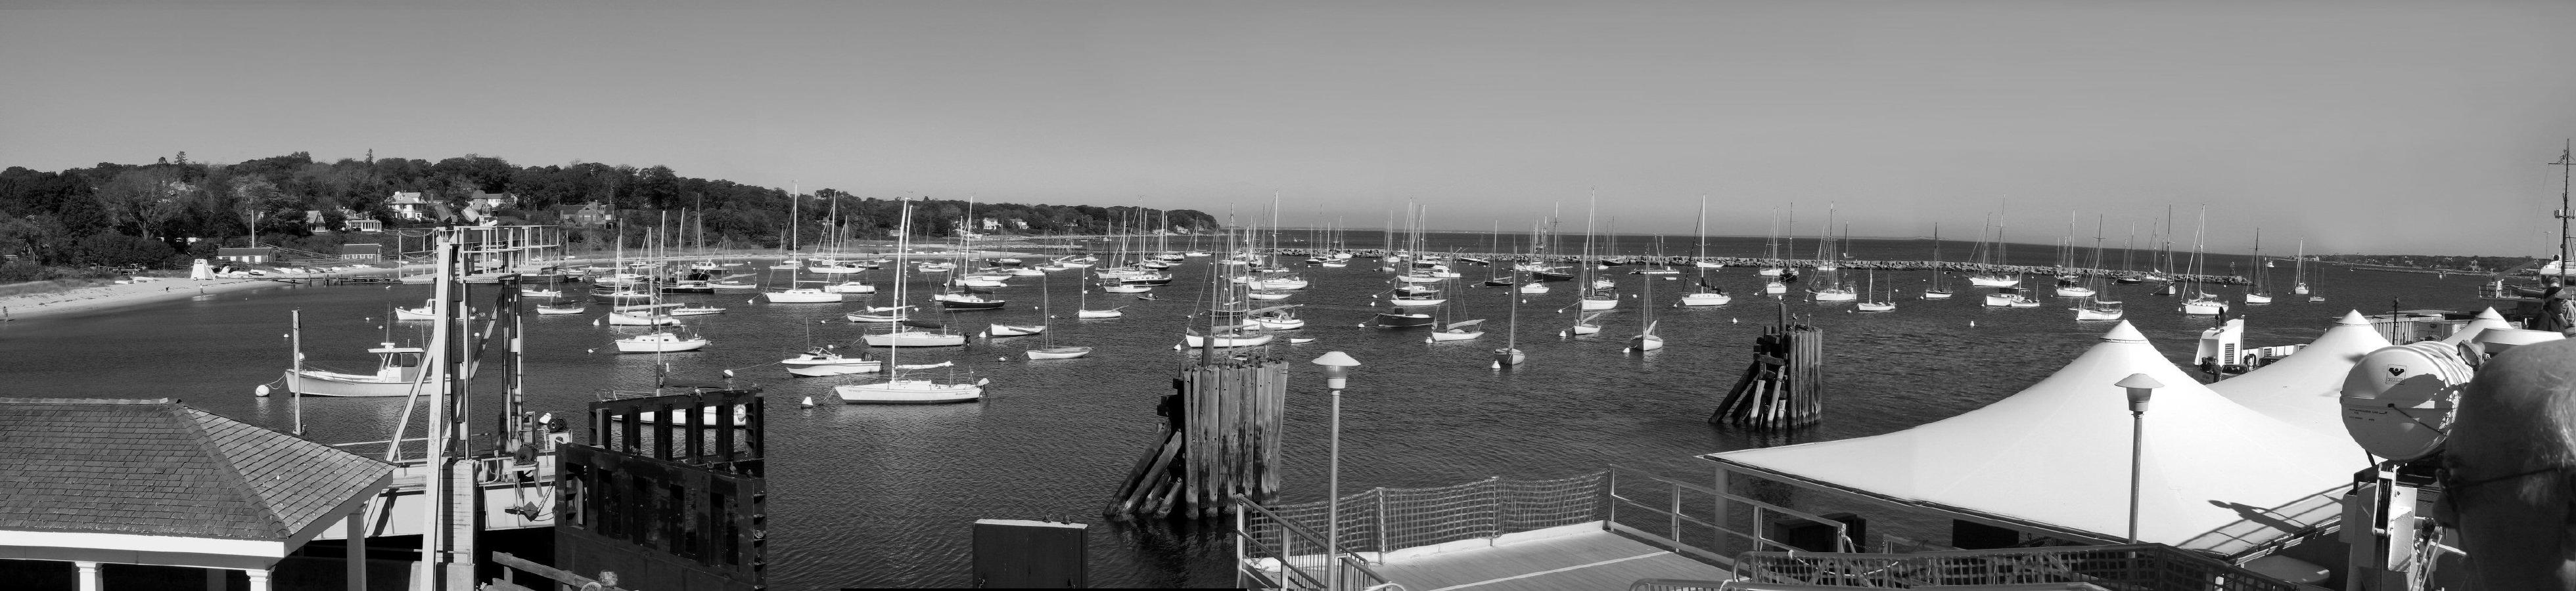 Ferry Harborview.jpg